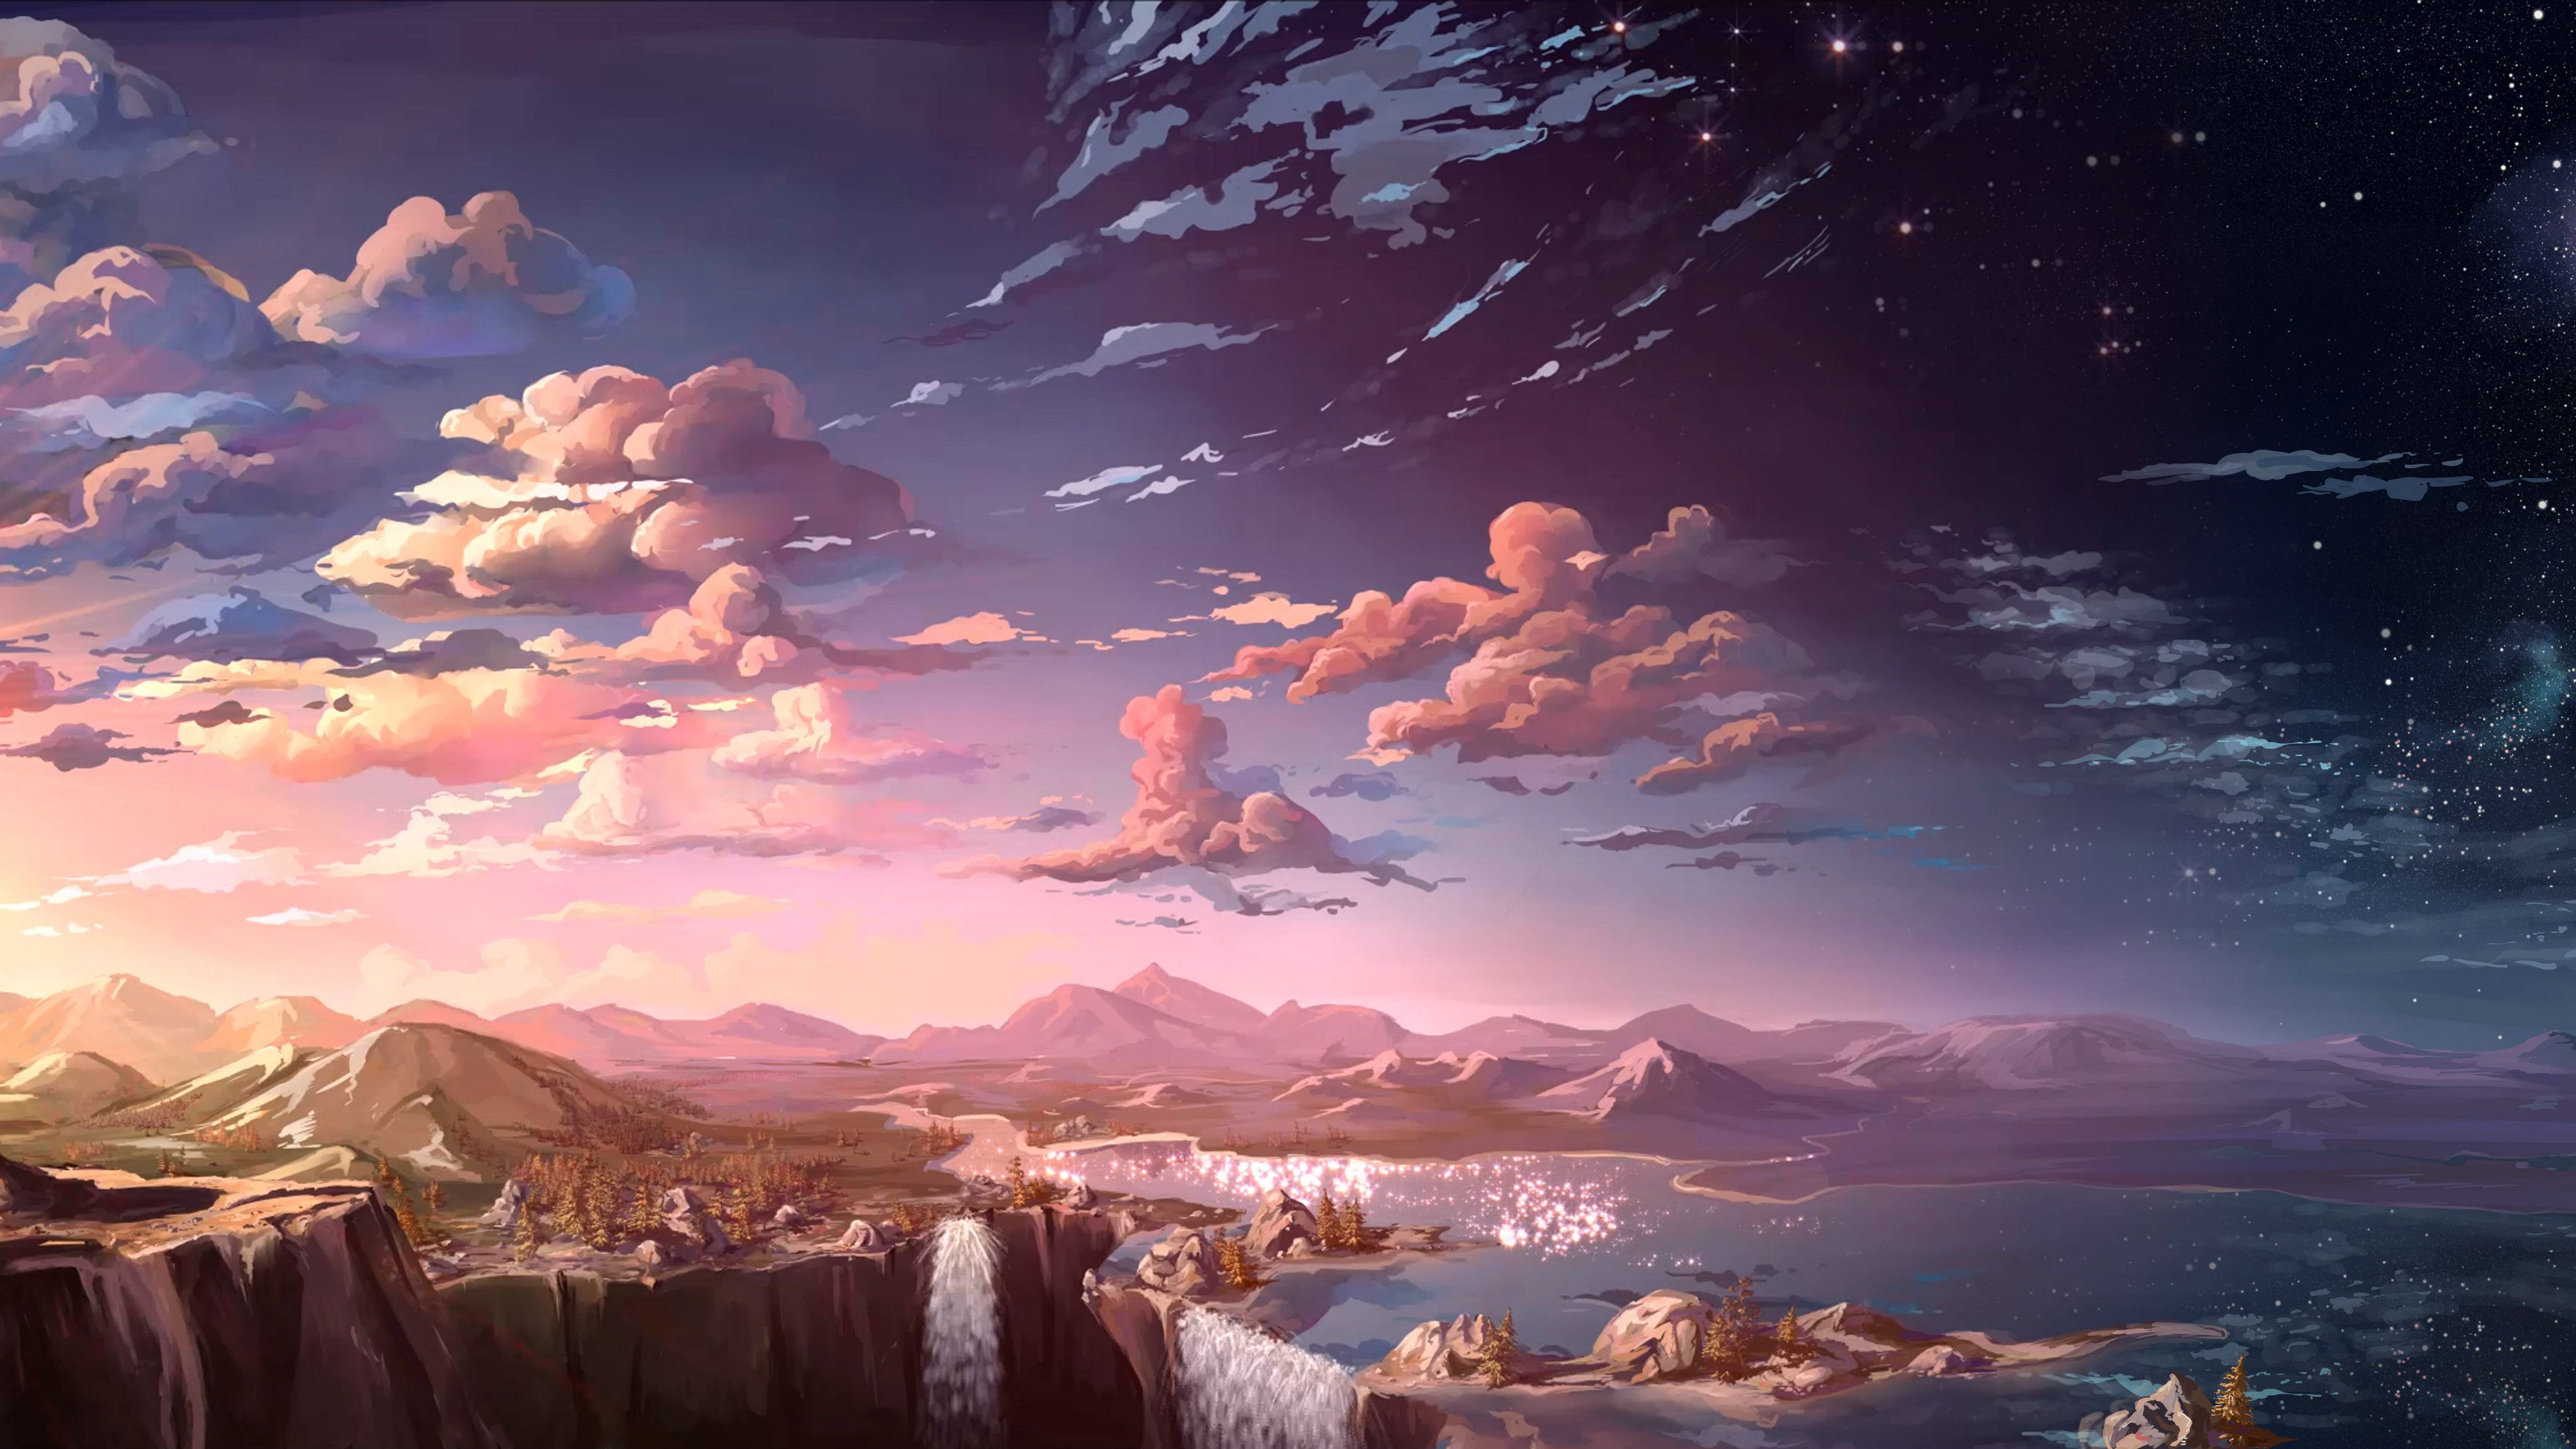 Anime Landscape Waterfall Cloud 5k Anime Scenery